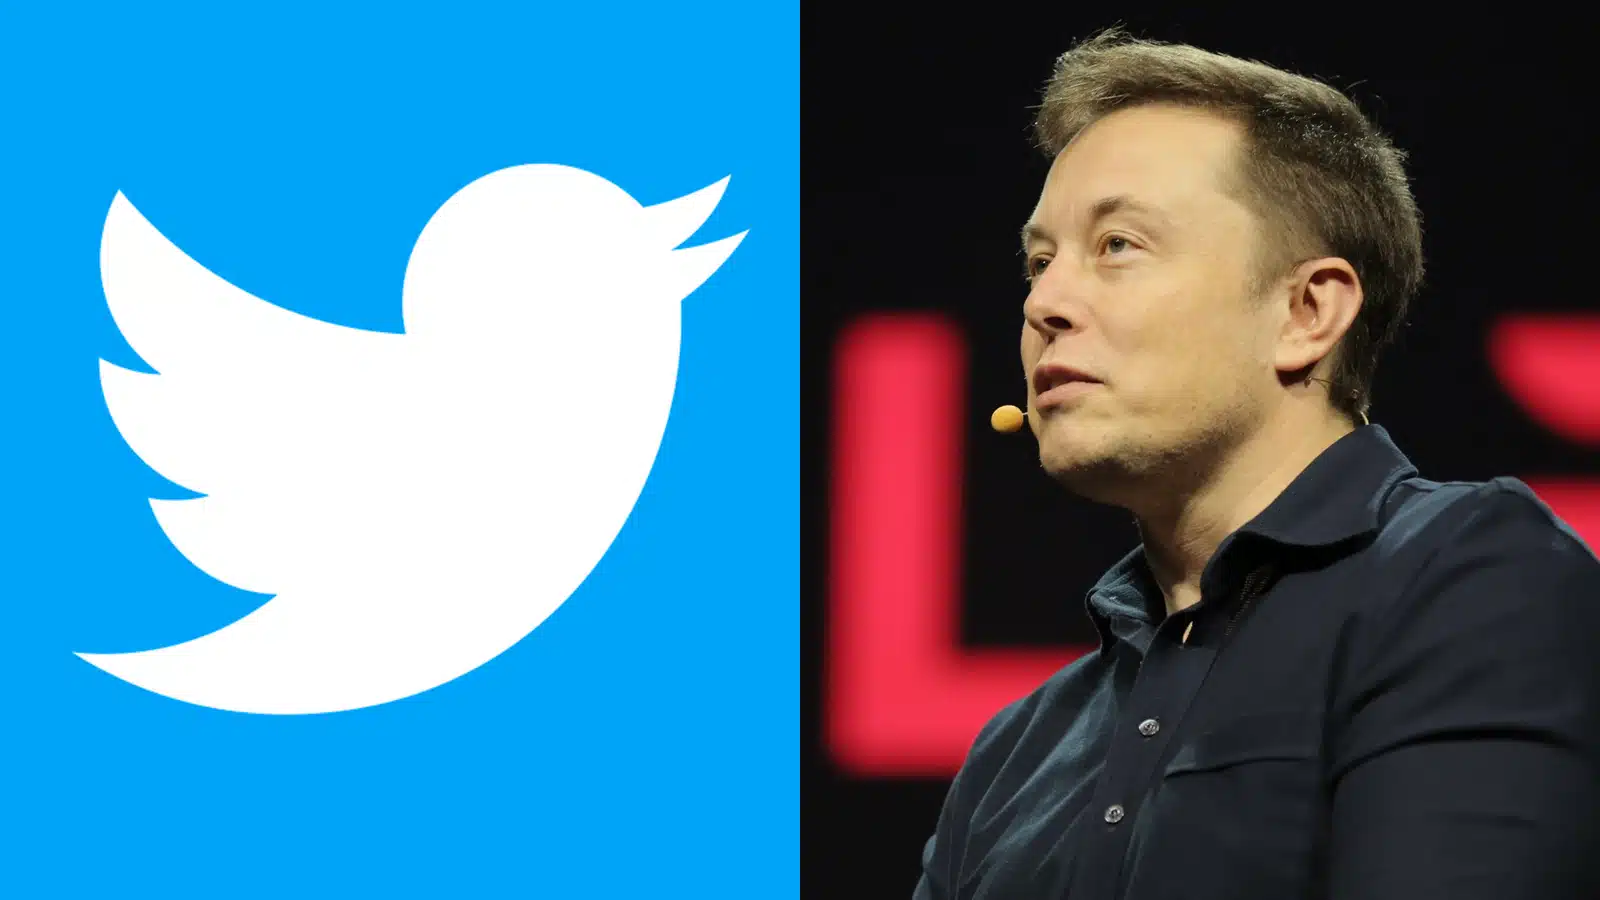 Elon Musk ACQUISTA Twitter e LICENZIA i VECCHI DIRIGENTI